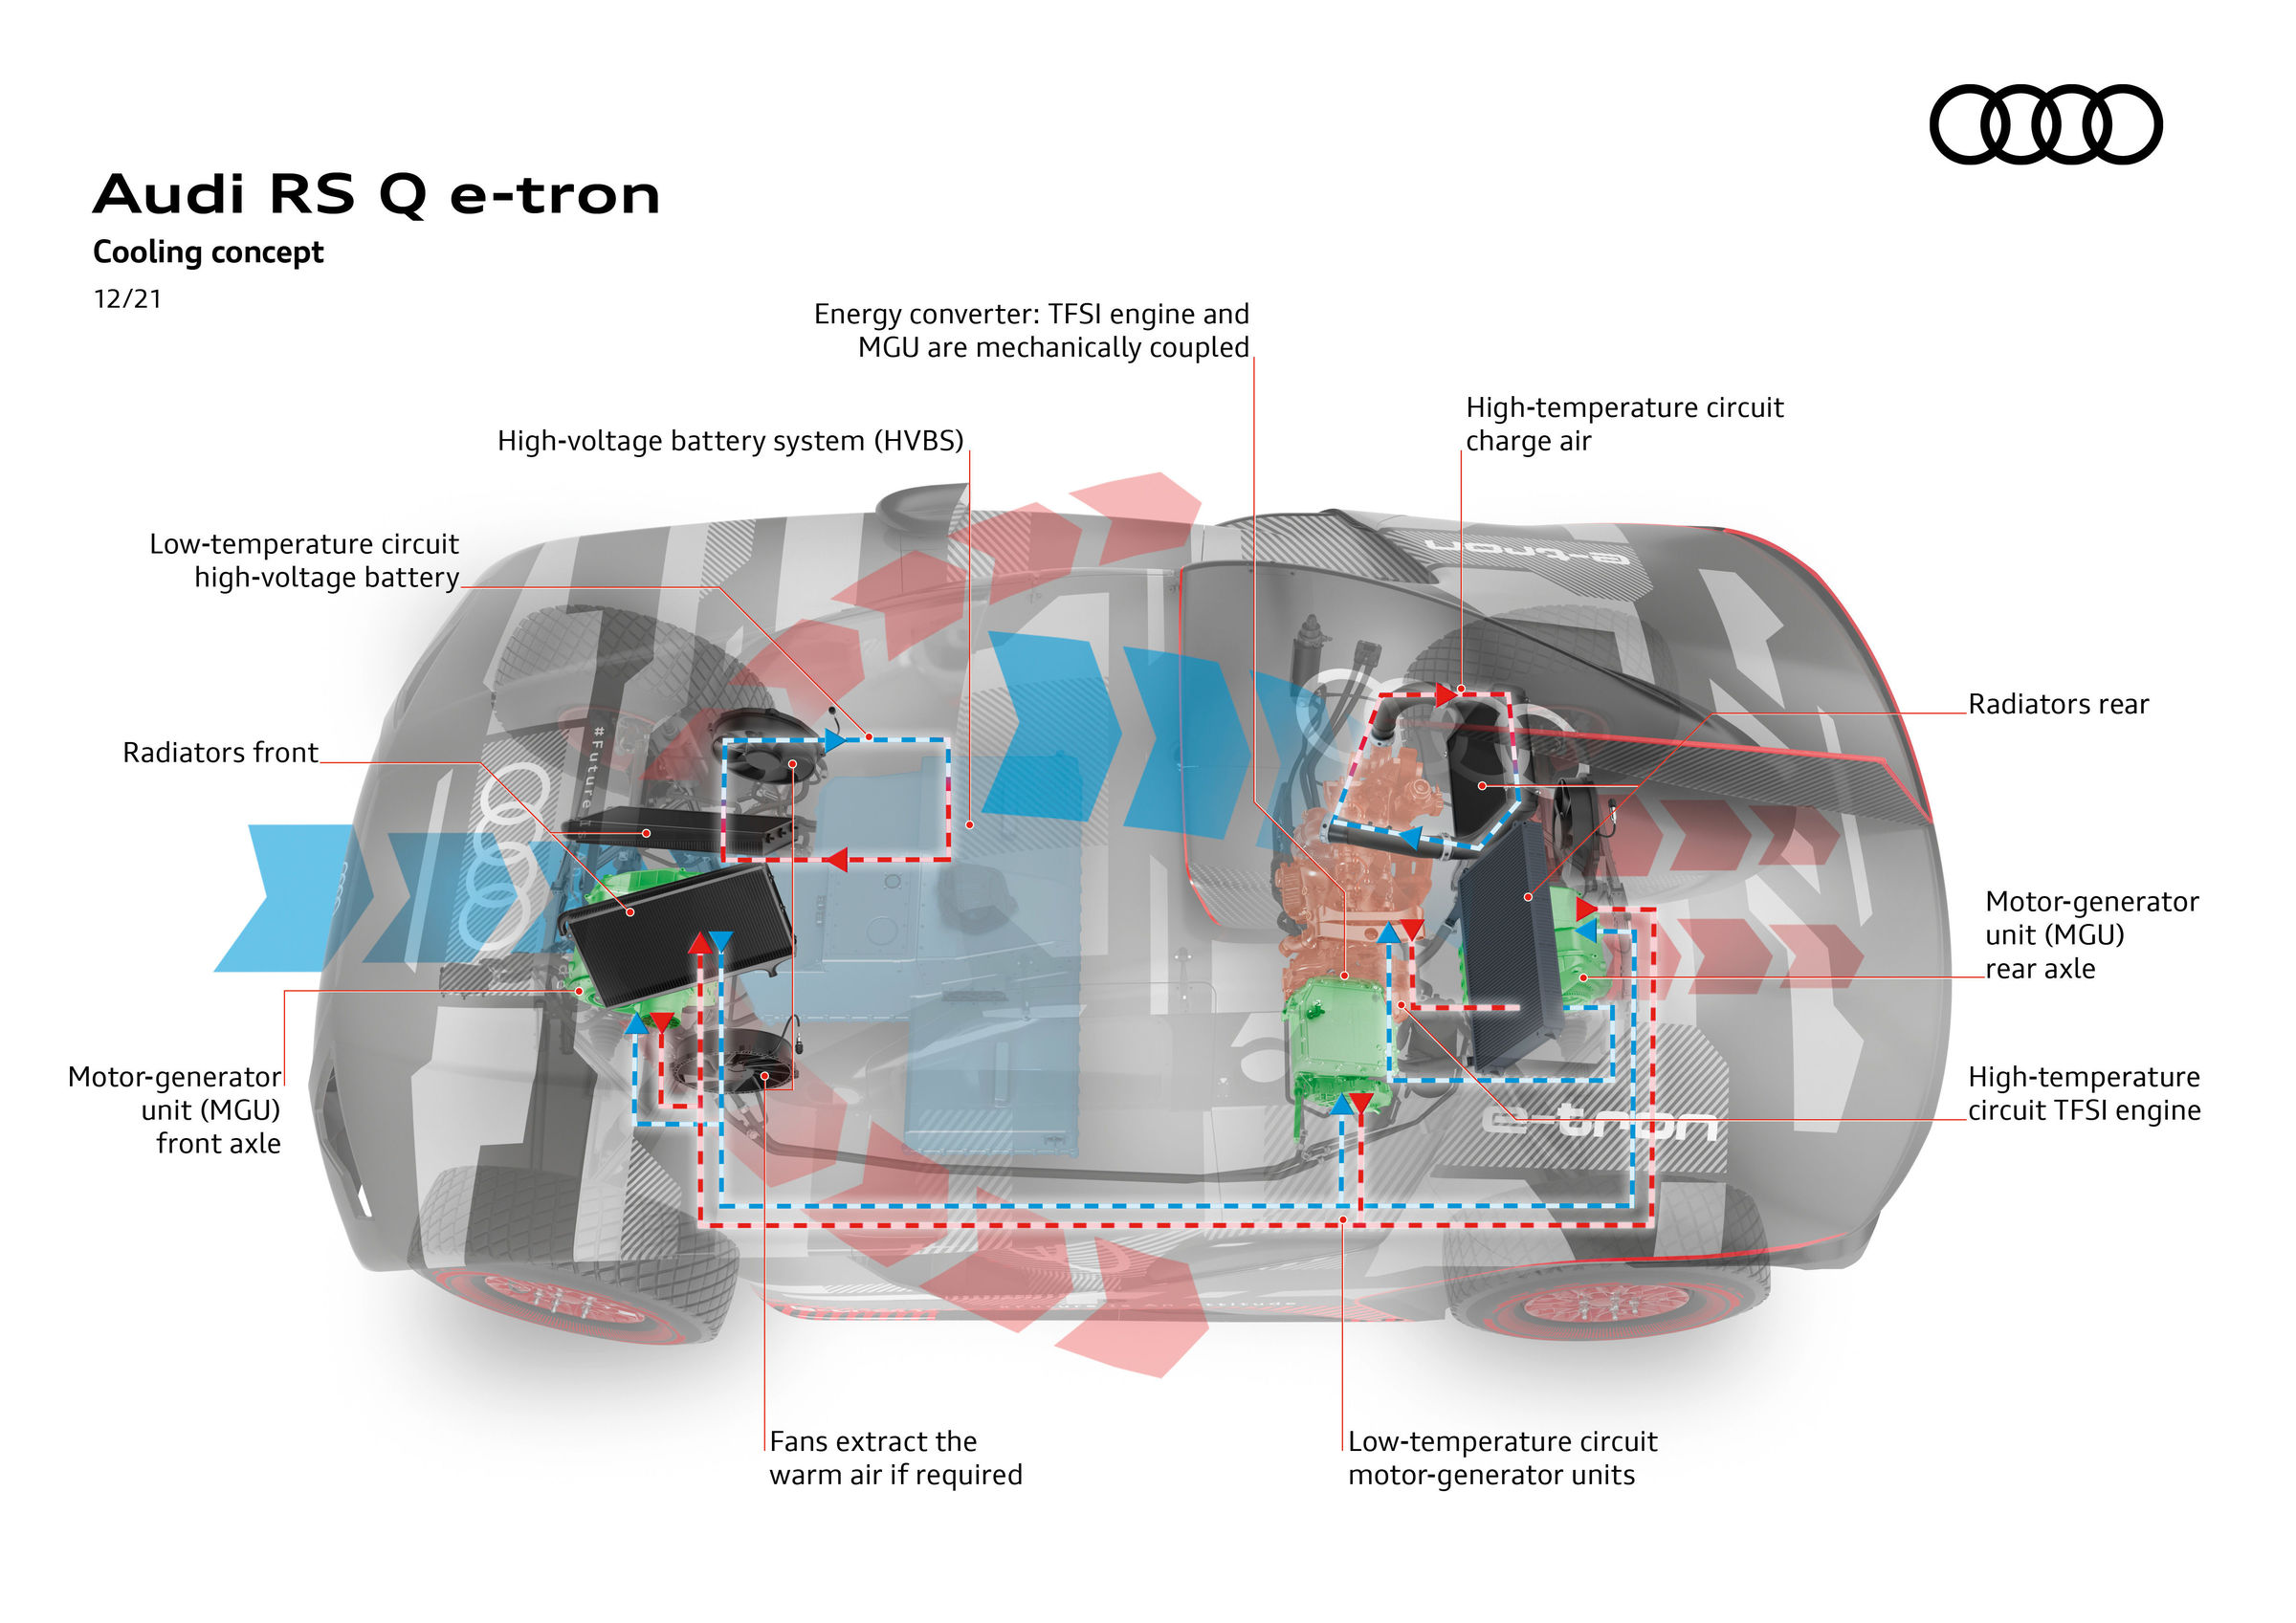 تبريد مضمون: أنظمة التبريد المتطورة في مركبة Audi RS Q e-tron المشاركة في رالي داكار